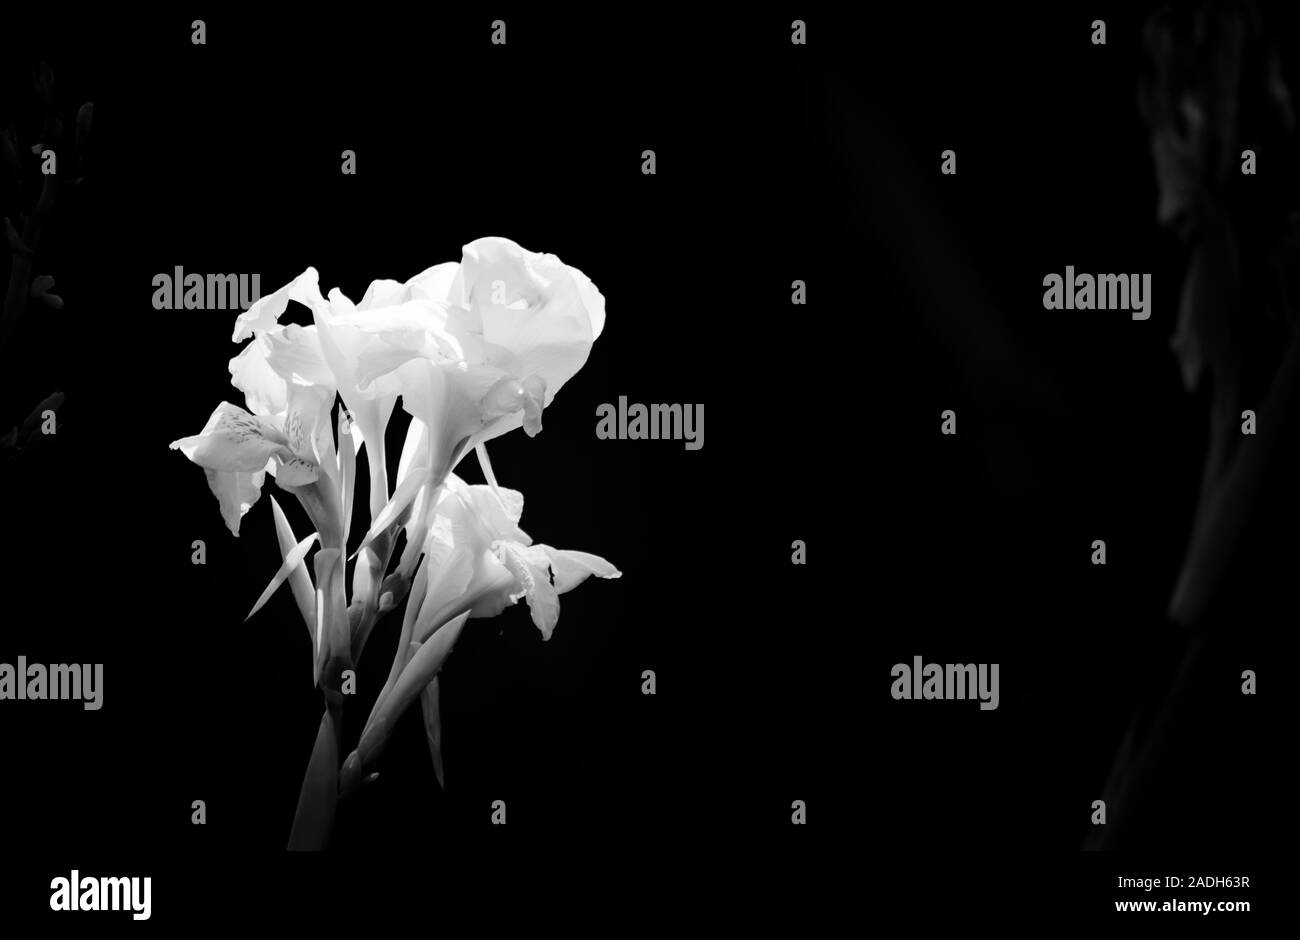 Primo piano con fiori bianchi e neri. Sfondo nero con immagine floreale isolata. Adatto per la scrittura in opere grafiche. Foto Stock